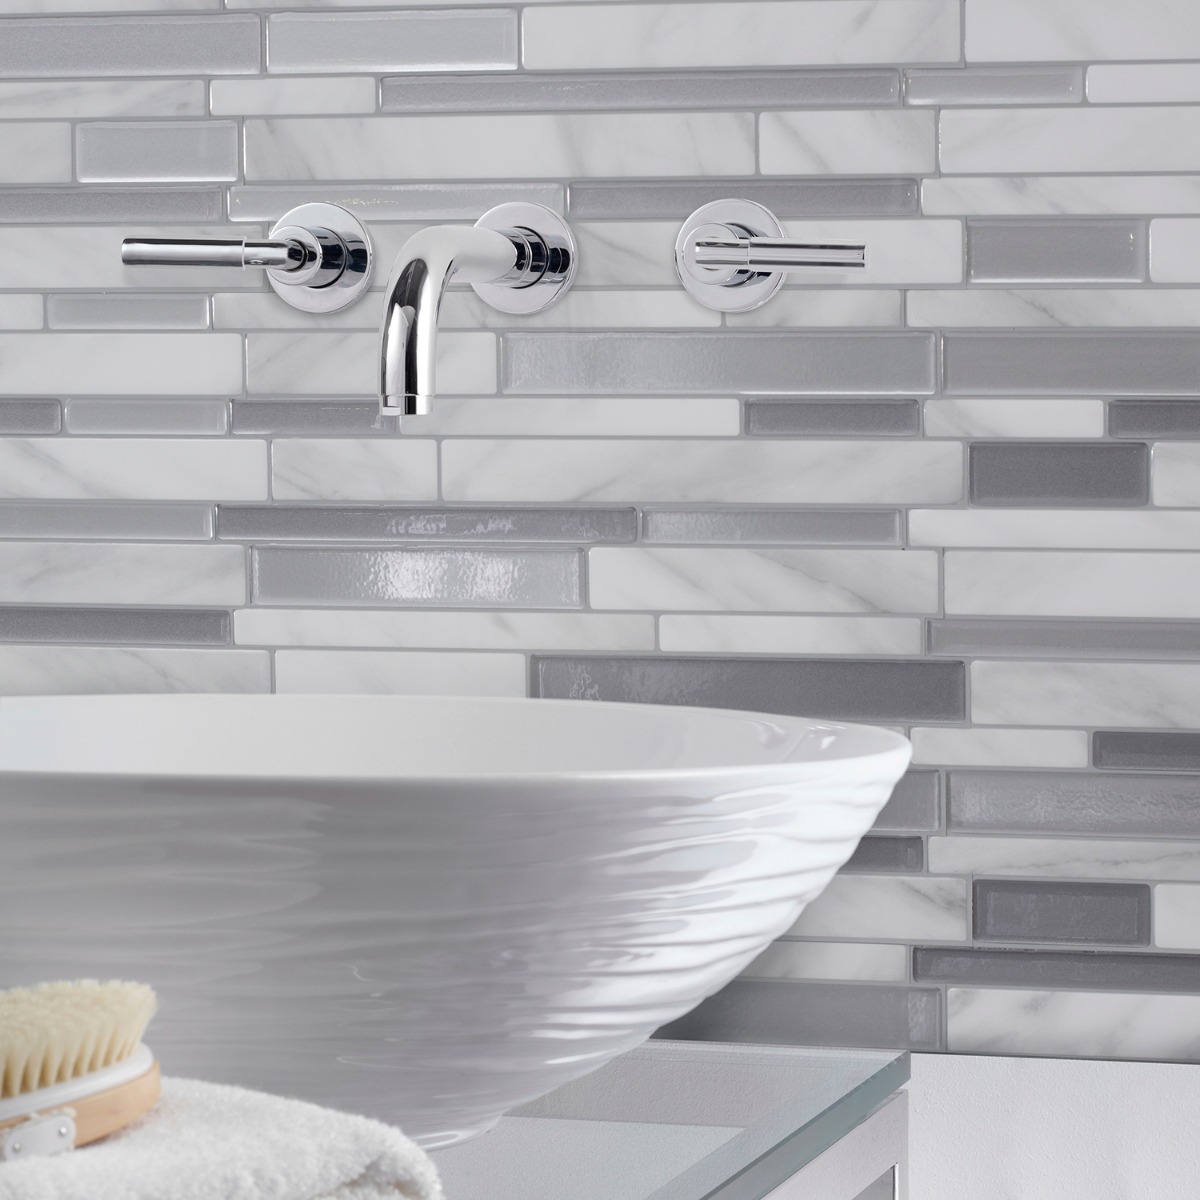 Peel and stick bathroom backsplash Smart Tiles